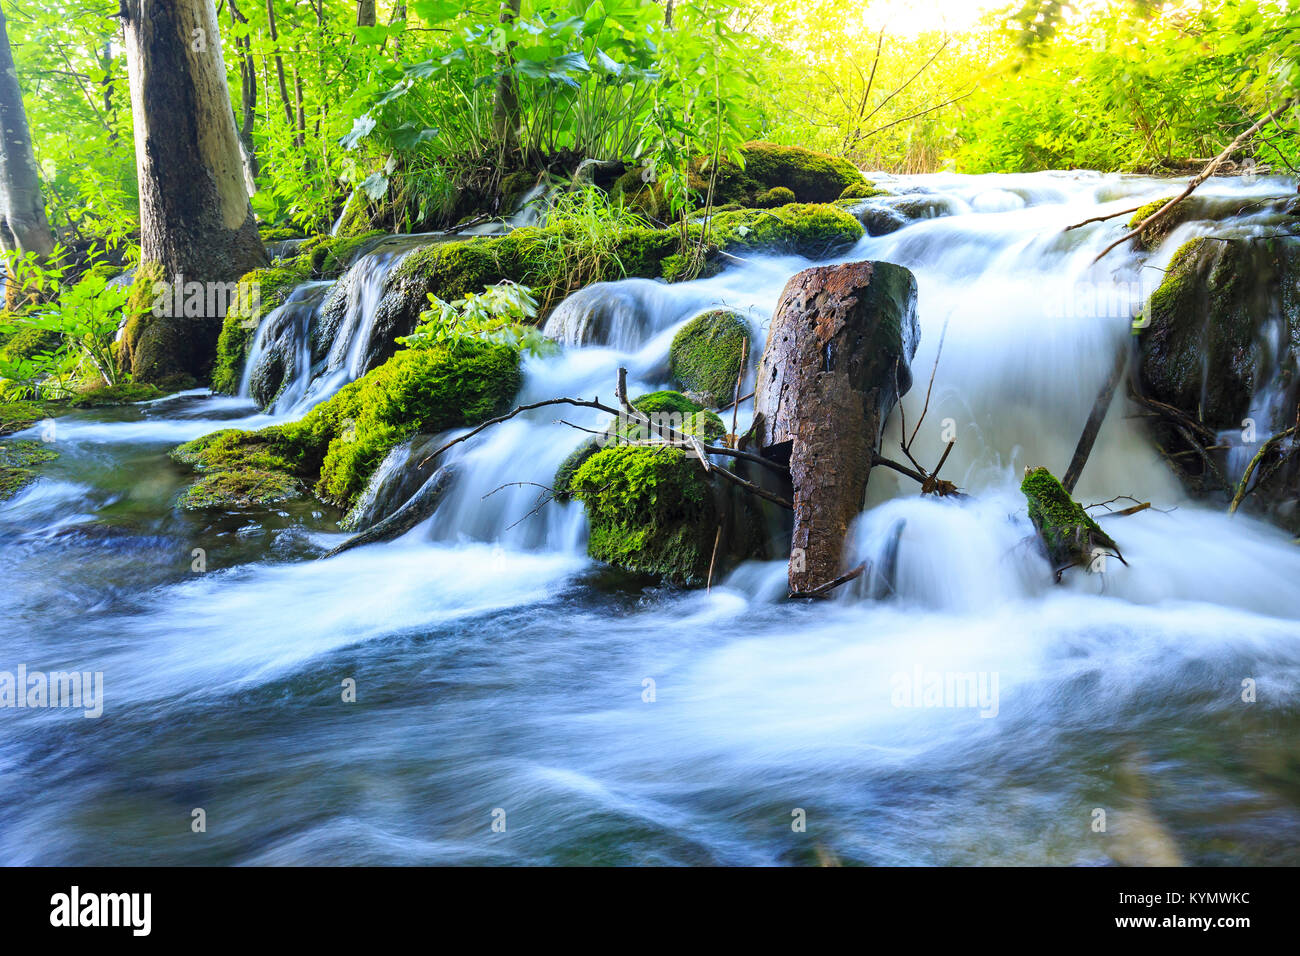 Cerca de cascadas de agua azul en un bosque verde durante el día, en verano.Los lagos de Plitvice, Croacia Foto de stock